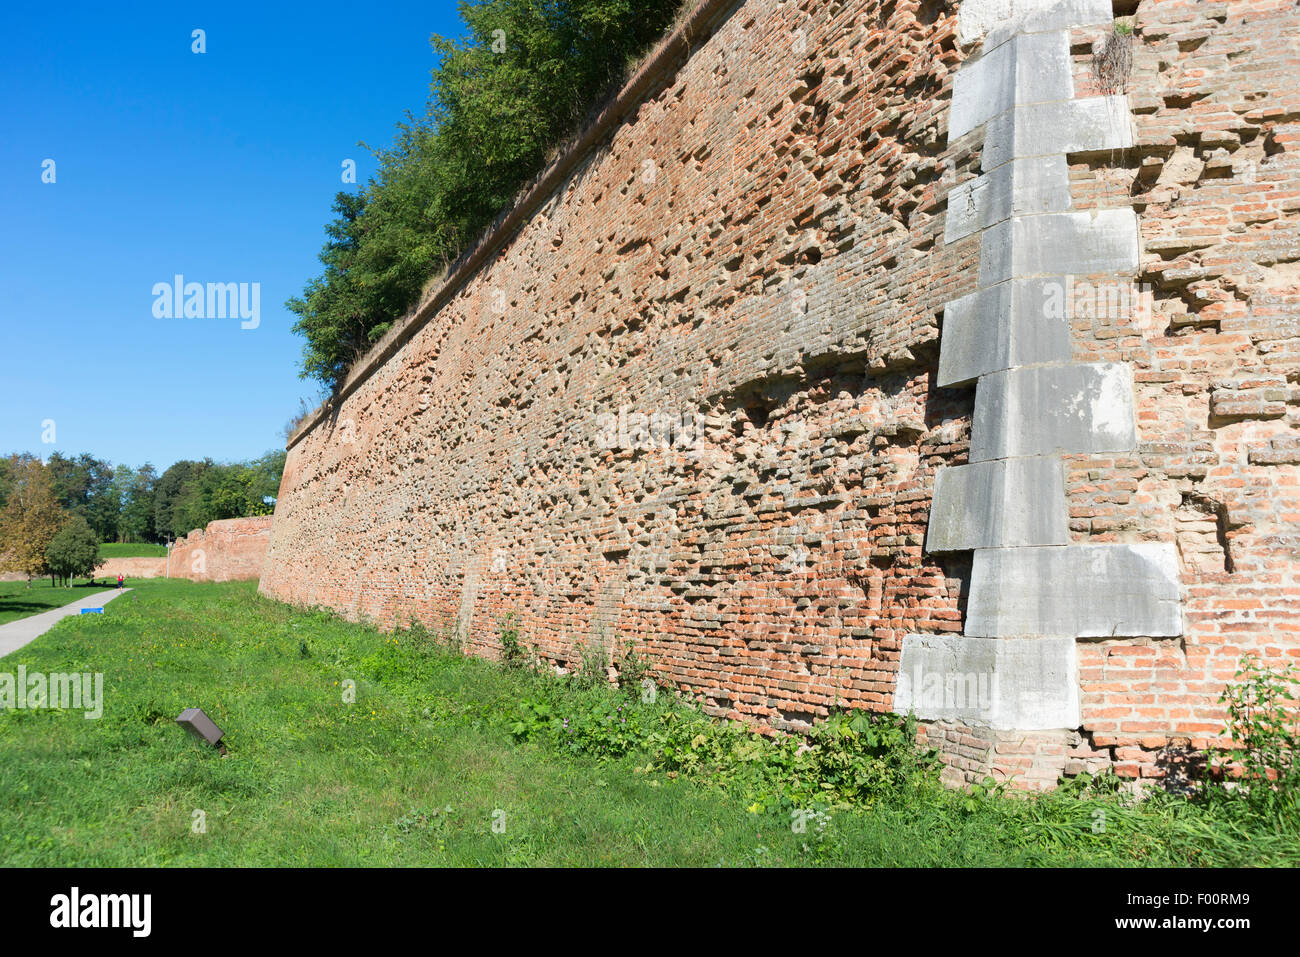 Les murs de la vieille ville, dans la ville médiévale fortifiée de Ferrara en Italie du Nord Banque D'Images